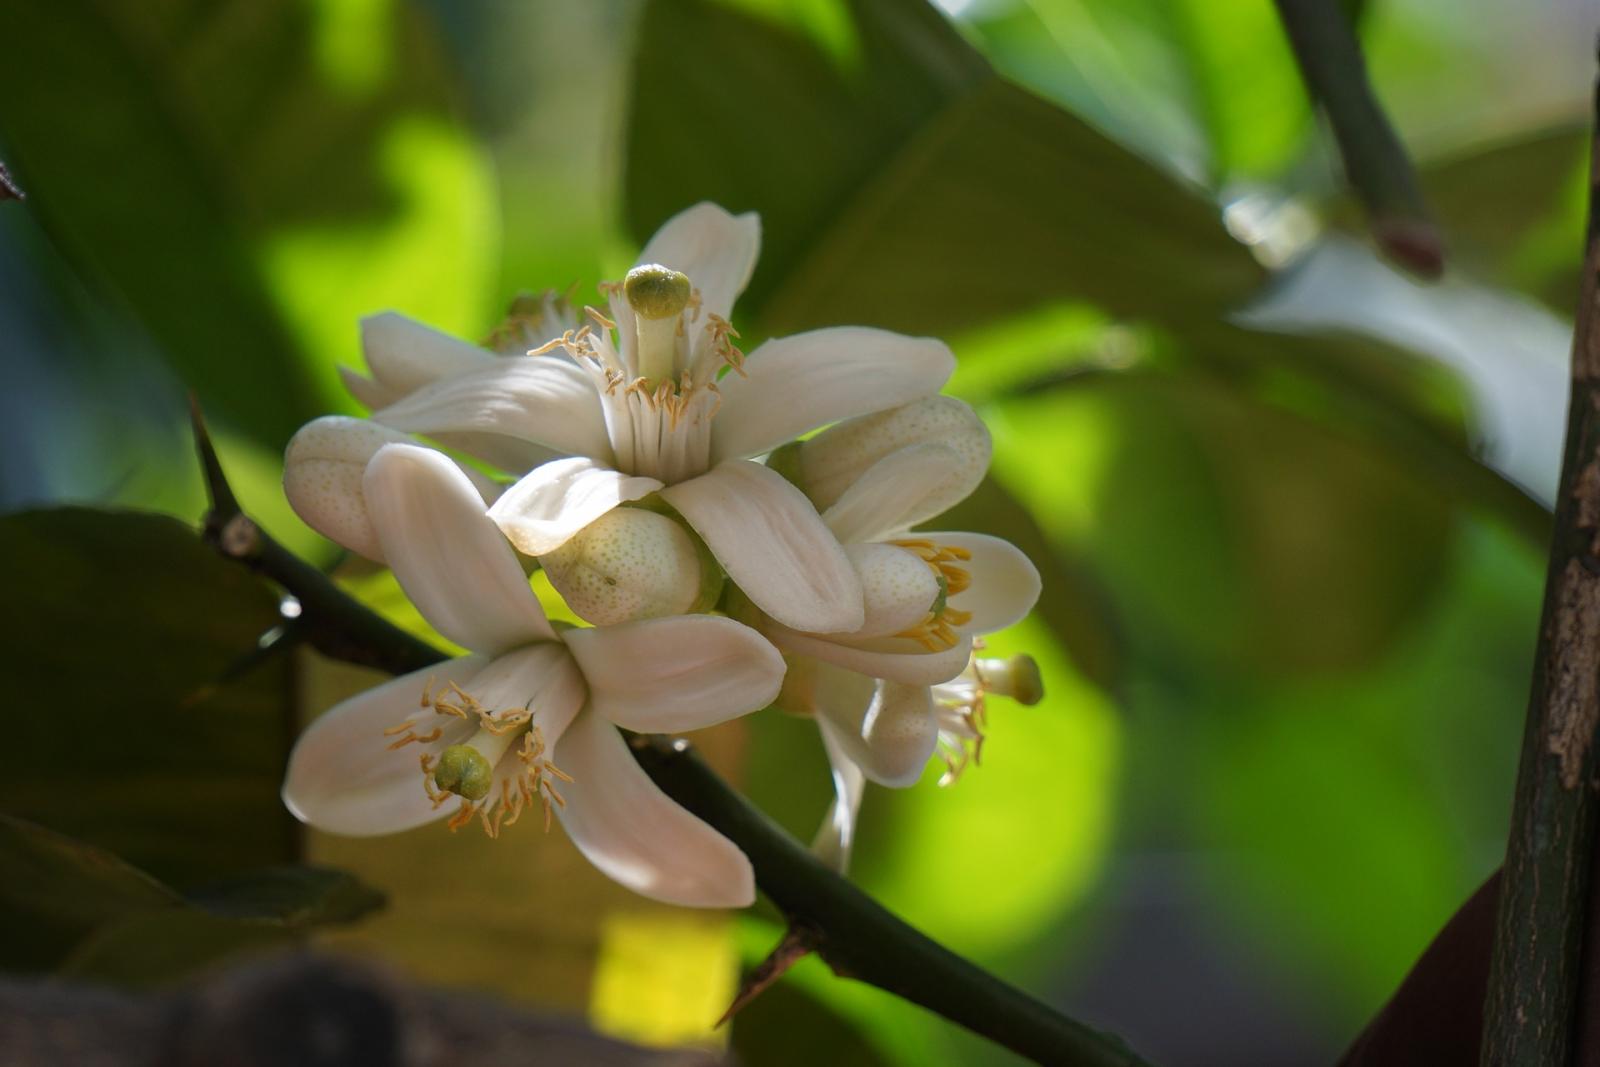 柑橘類花期在1月至3月，提供蜜蜂良好的繁育資源。